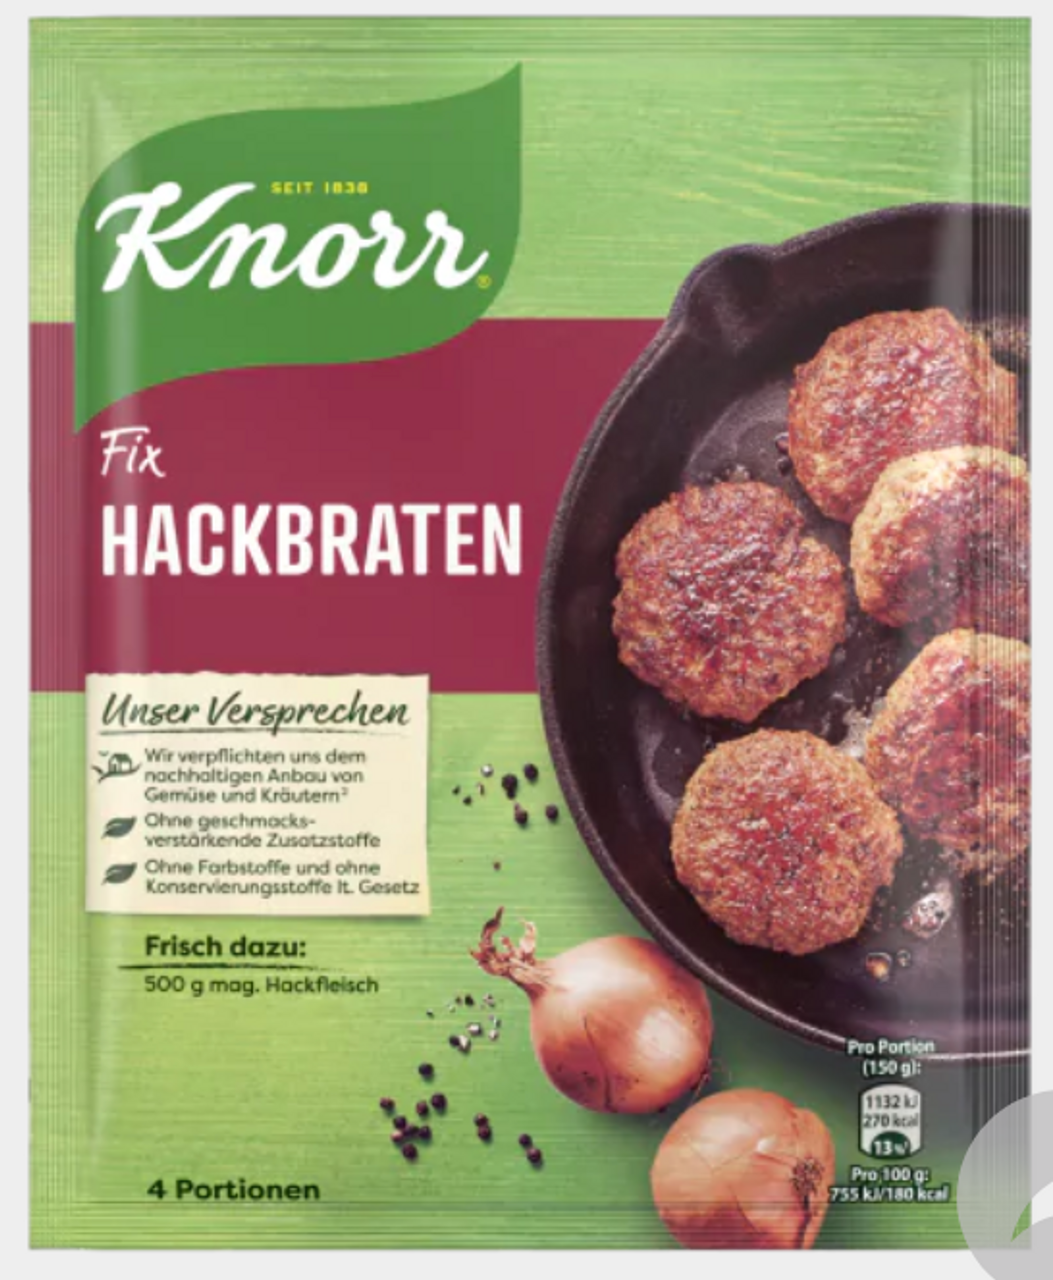 78g Hackbraten Fix Knorr